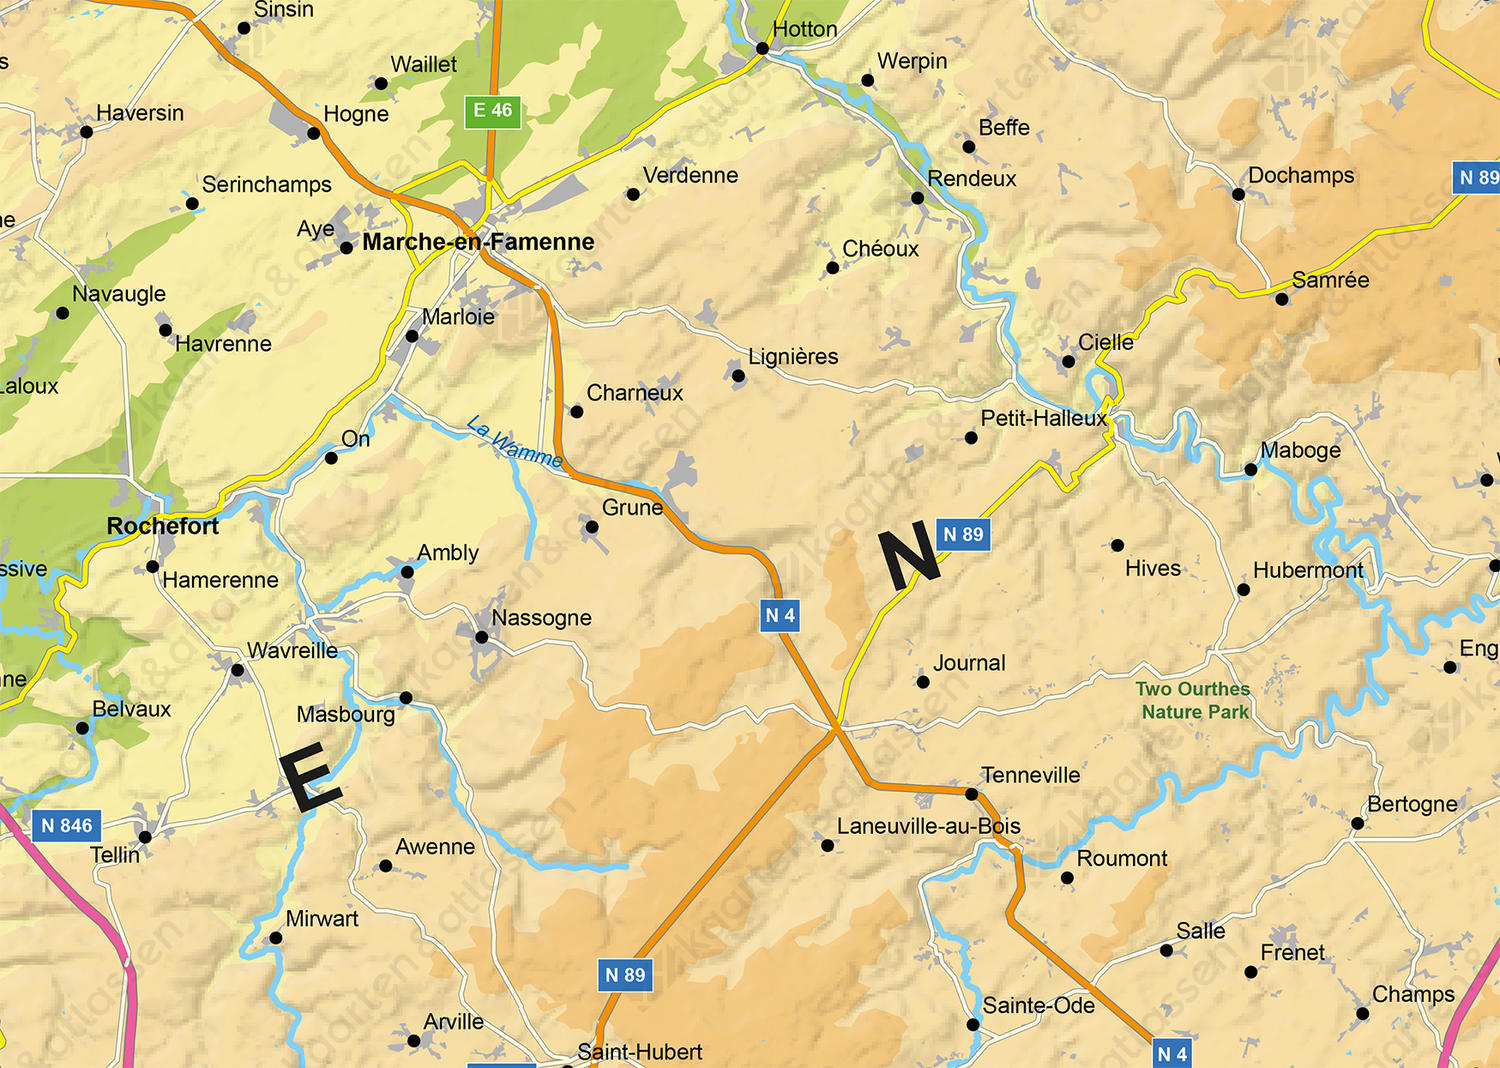 Digitale Kaart Ardennen